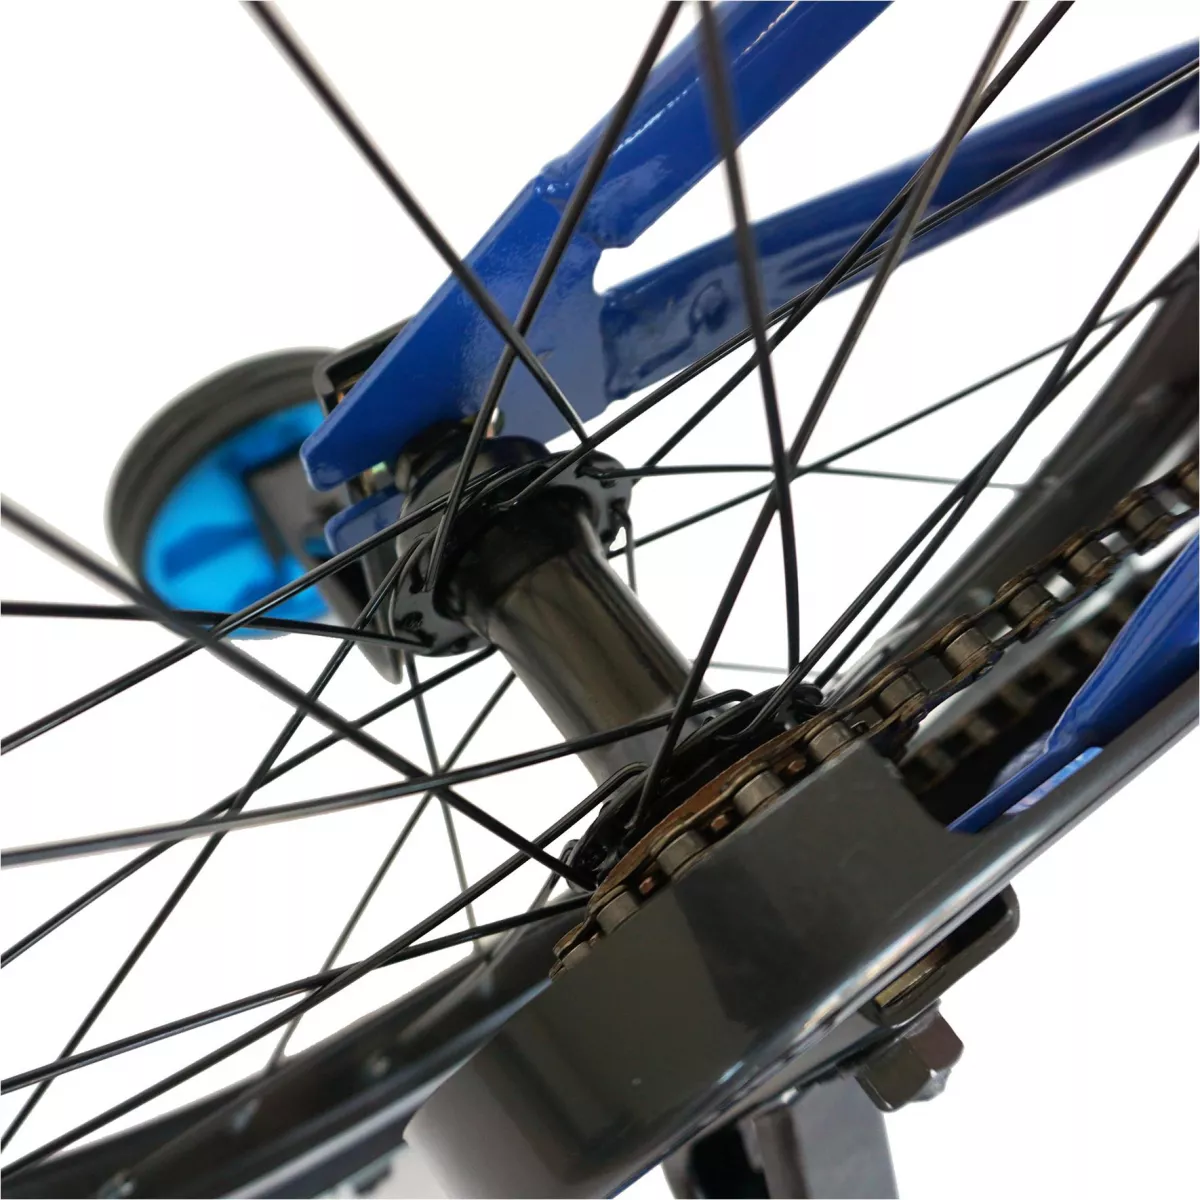 Bicicleta baieti CARPAT C1201C, roata 12", V-Brake, roti ajutatoare, 2-4 ani,  albastru/negru 